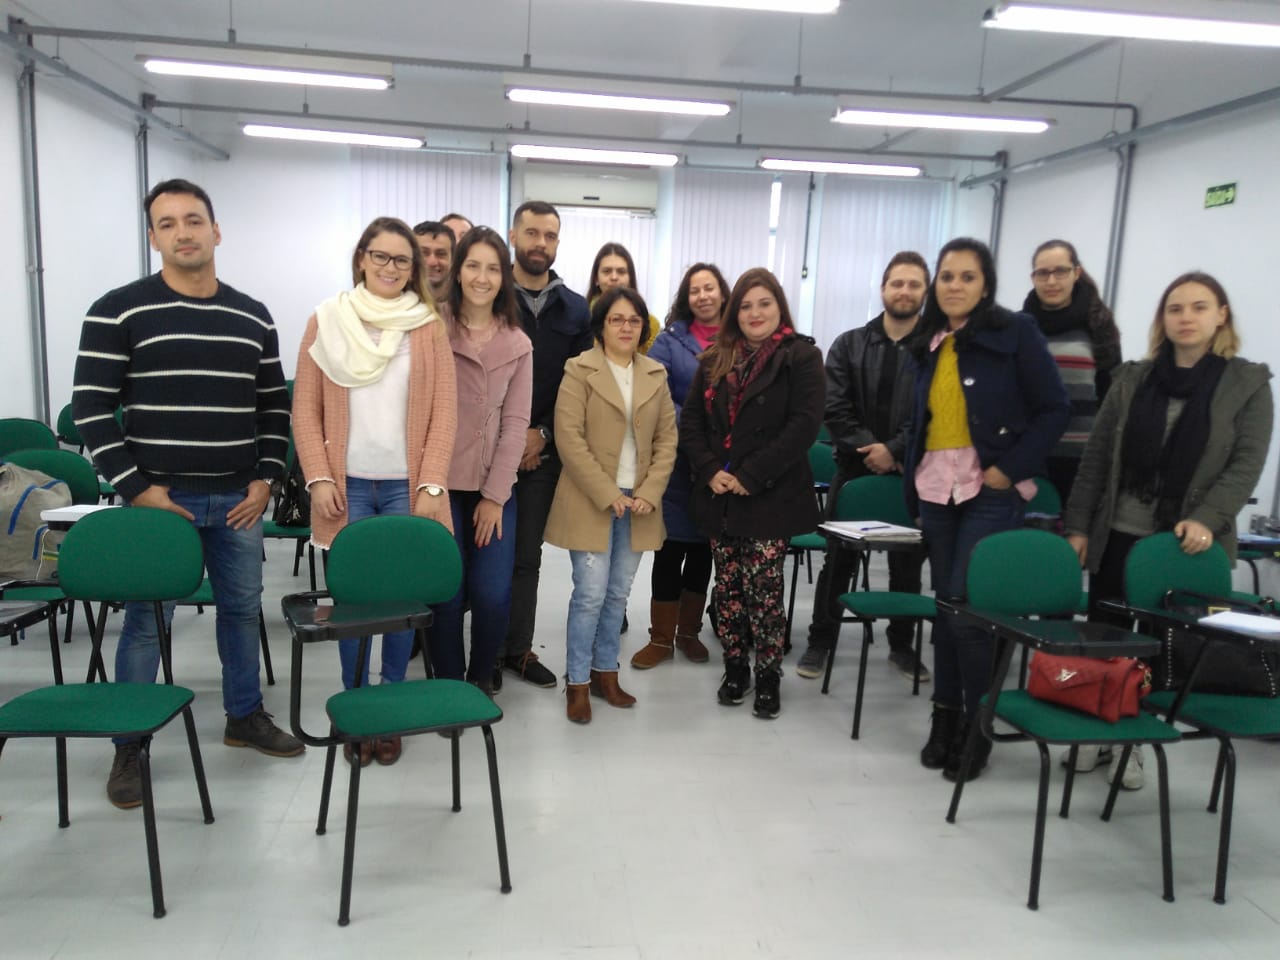 Foto mostra 14 servidores em pé, lado a lado, em uma sala de aula com cadeiras verdes